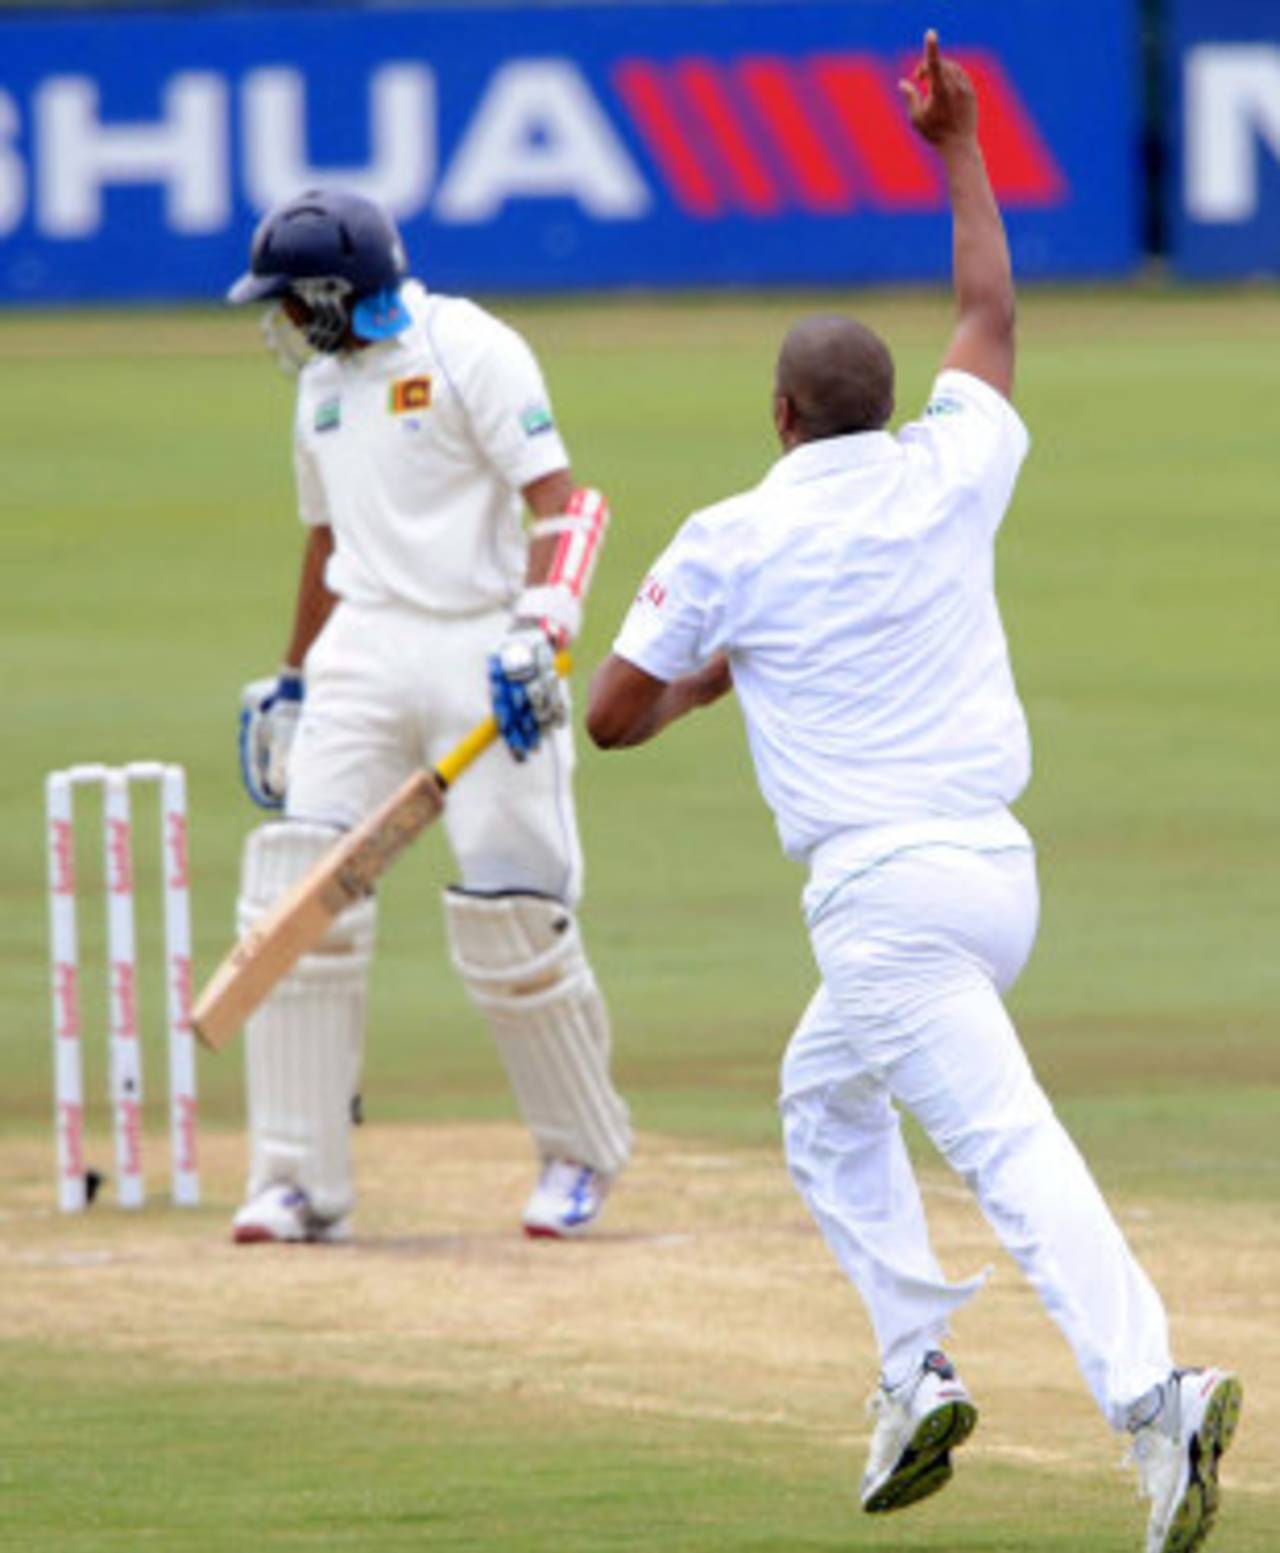 Vernon Philander celebrates as Tillakaratne Dilshan looks on, South Africa v Sri Lanka, 1st Test, Centurion, 3rd day, December 17, 2011